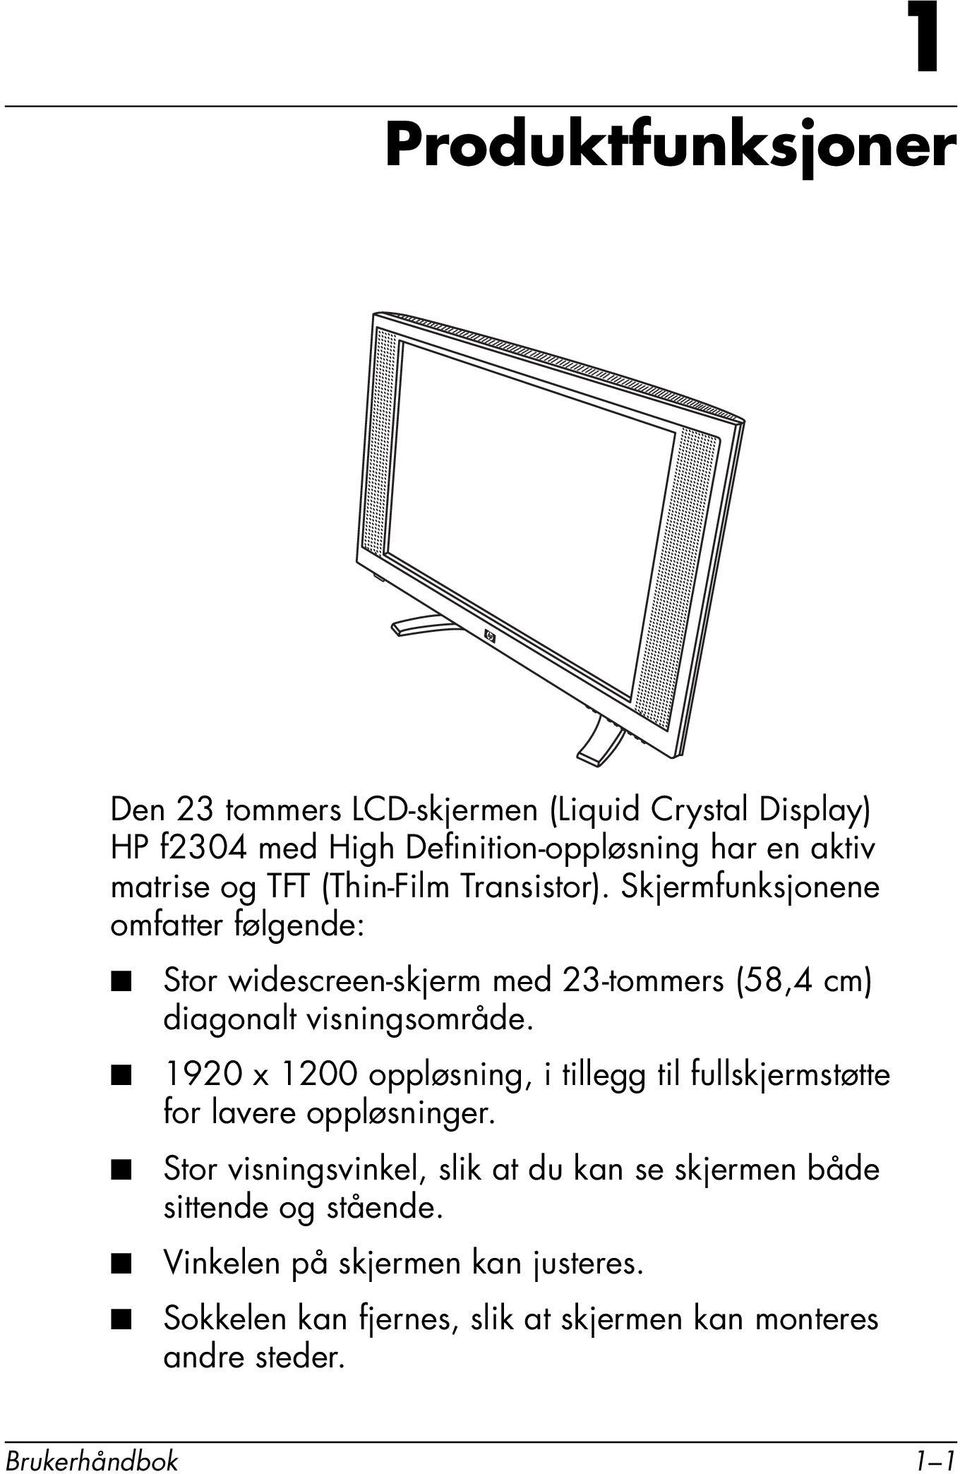 Skjermfunksjonene omfatter følgende: Stor widescreen-skjerm med 23-tommers (58,4 cm) diagonalt visningsområde.